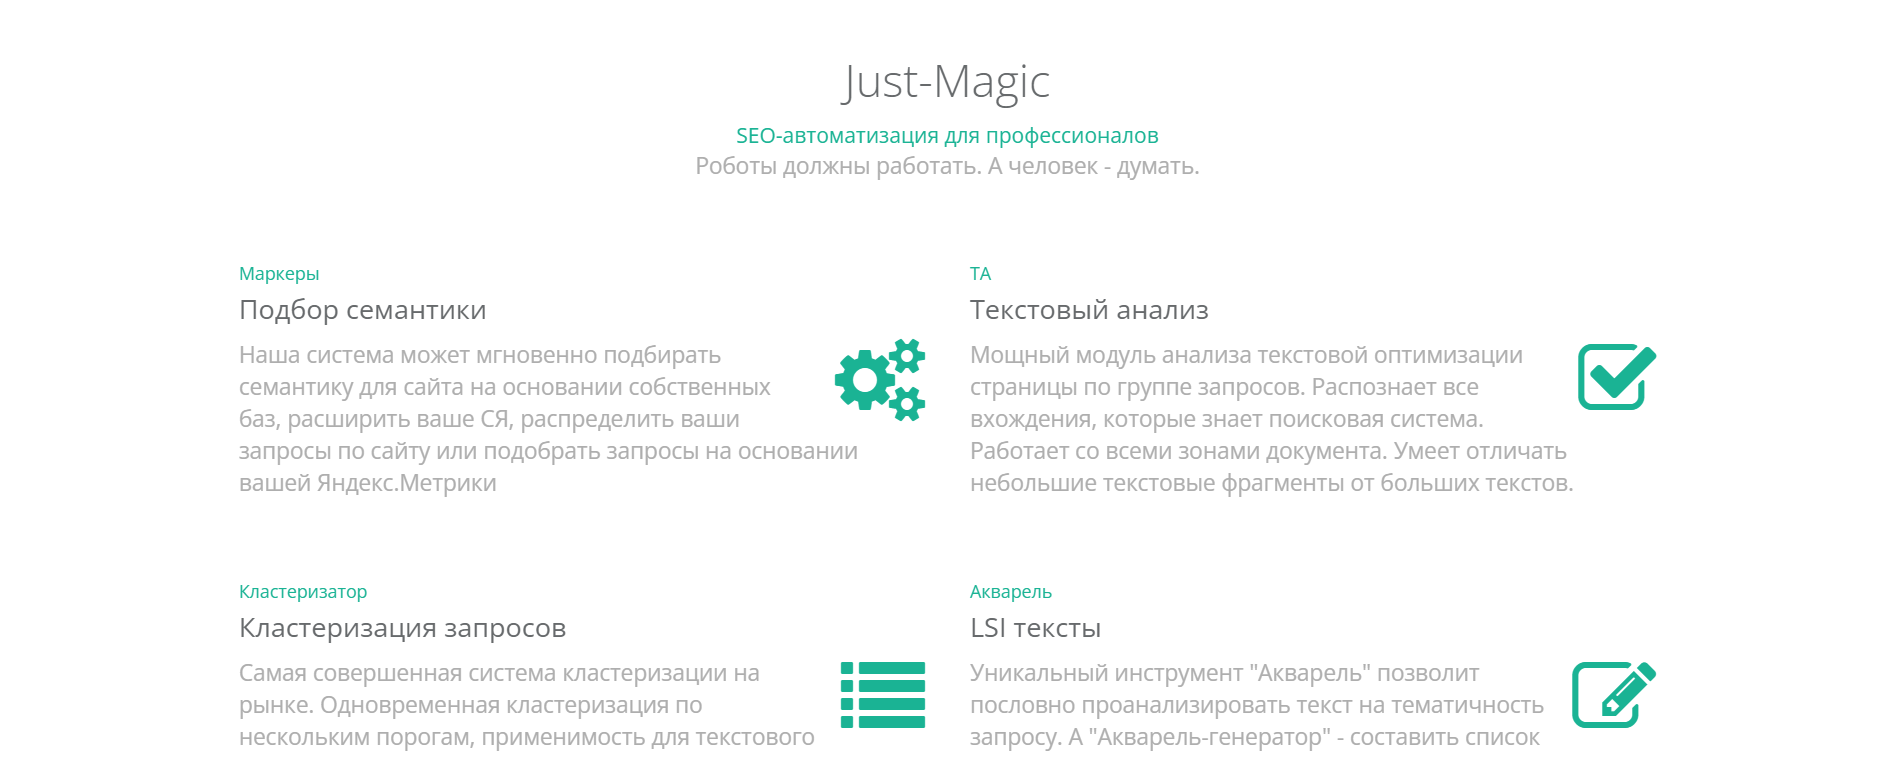 40+ инструментов SEO-специалиста: Just-Magic